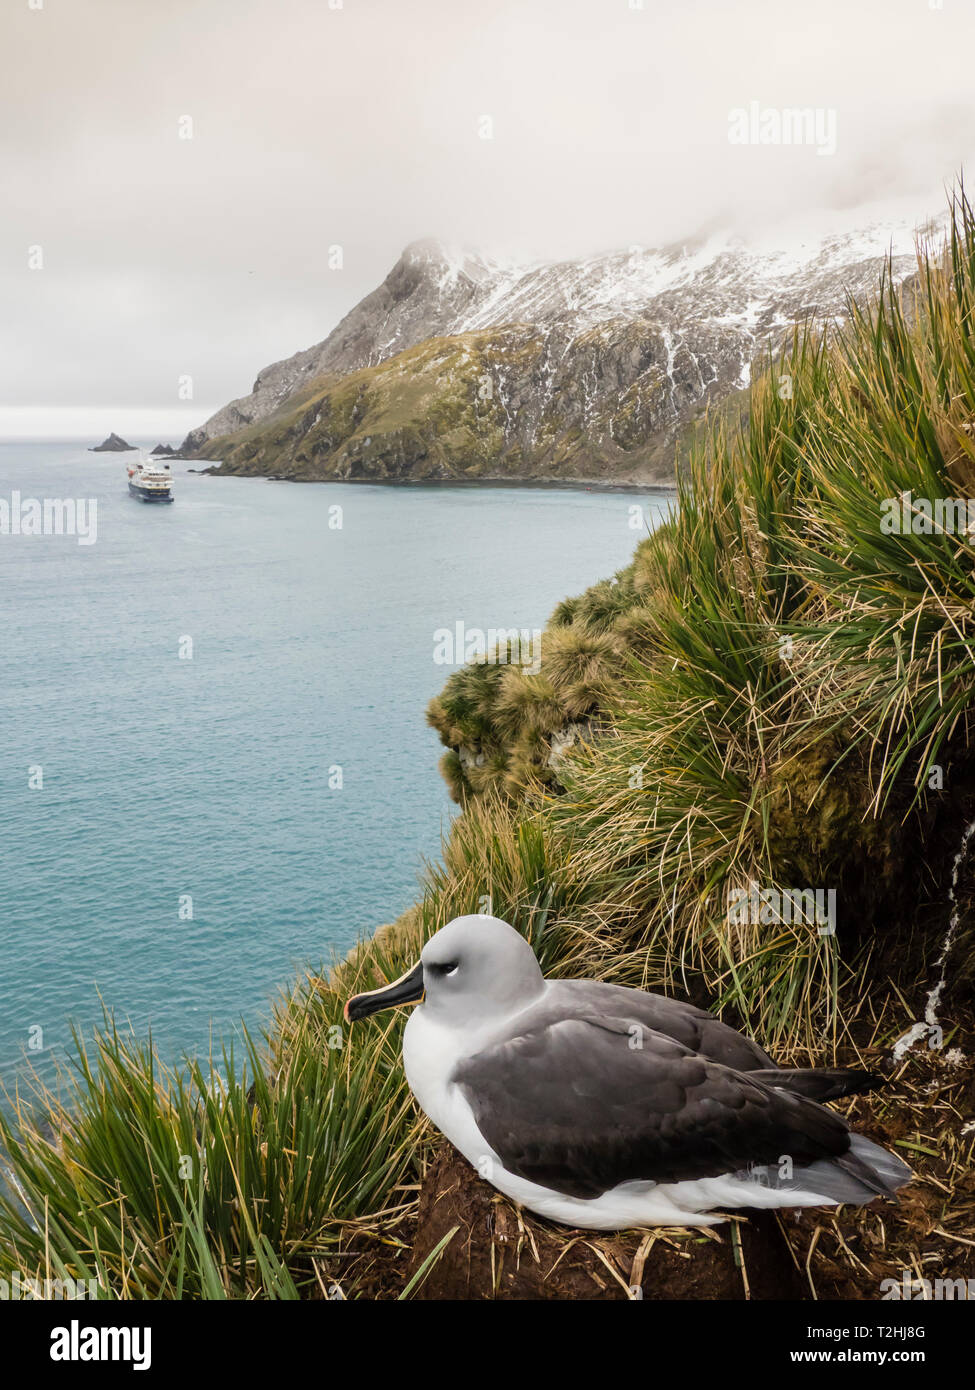 En adultos, el albatros de cabeza gris Thalassarche chrysostoma cespitosas, anidan en el pasto en Elsehul, Isla Georgia del Sur, el Océano Atlántico Foto de stock